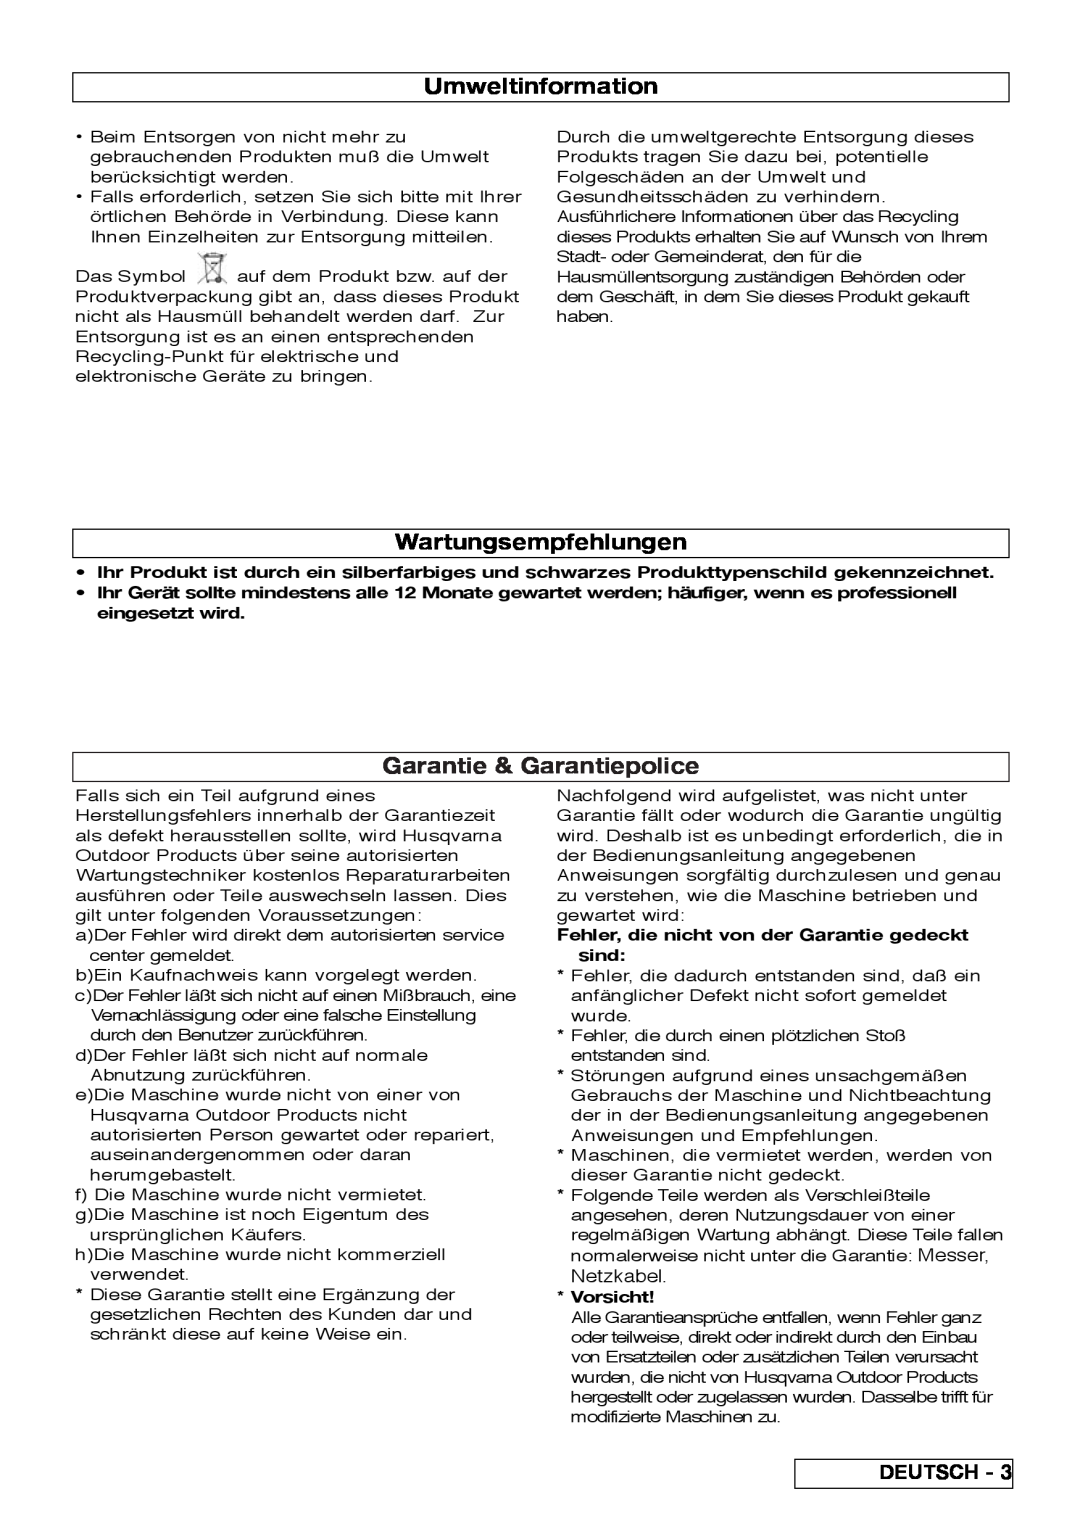 Flymo VM032 manual Umweltinformation, Wartungsempfehlungen, Garantie & Garantiepolice, Deutsch, Vorsicht 